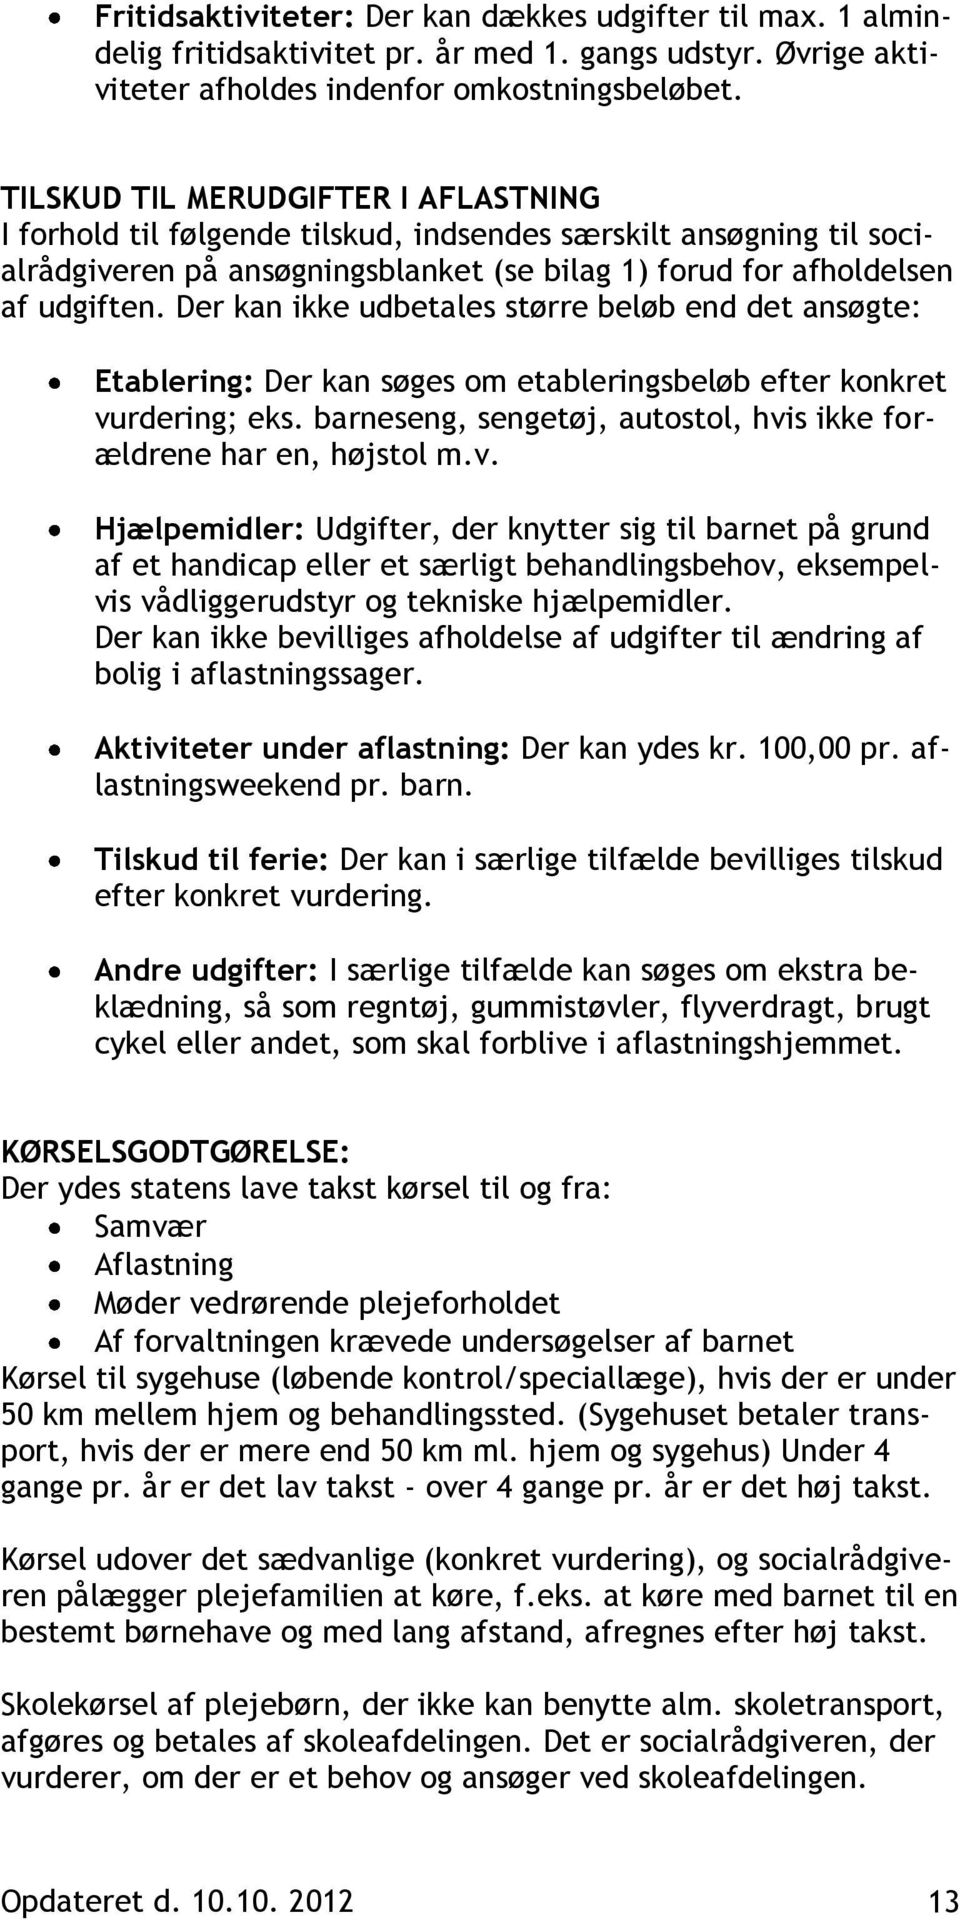 Haderslev Kommunes håndbog for plejefamilier - PDF Gratis download